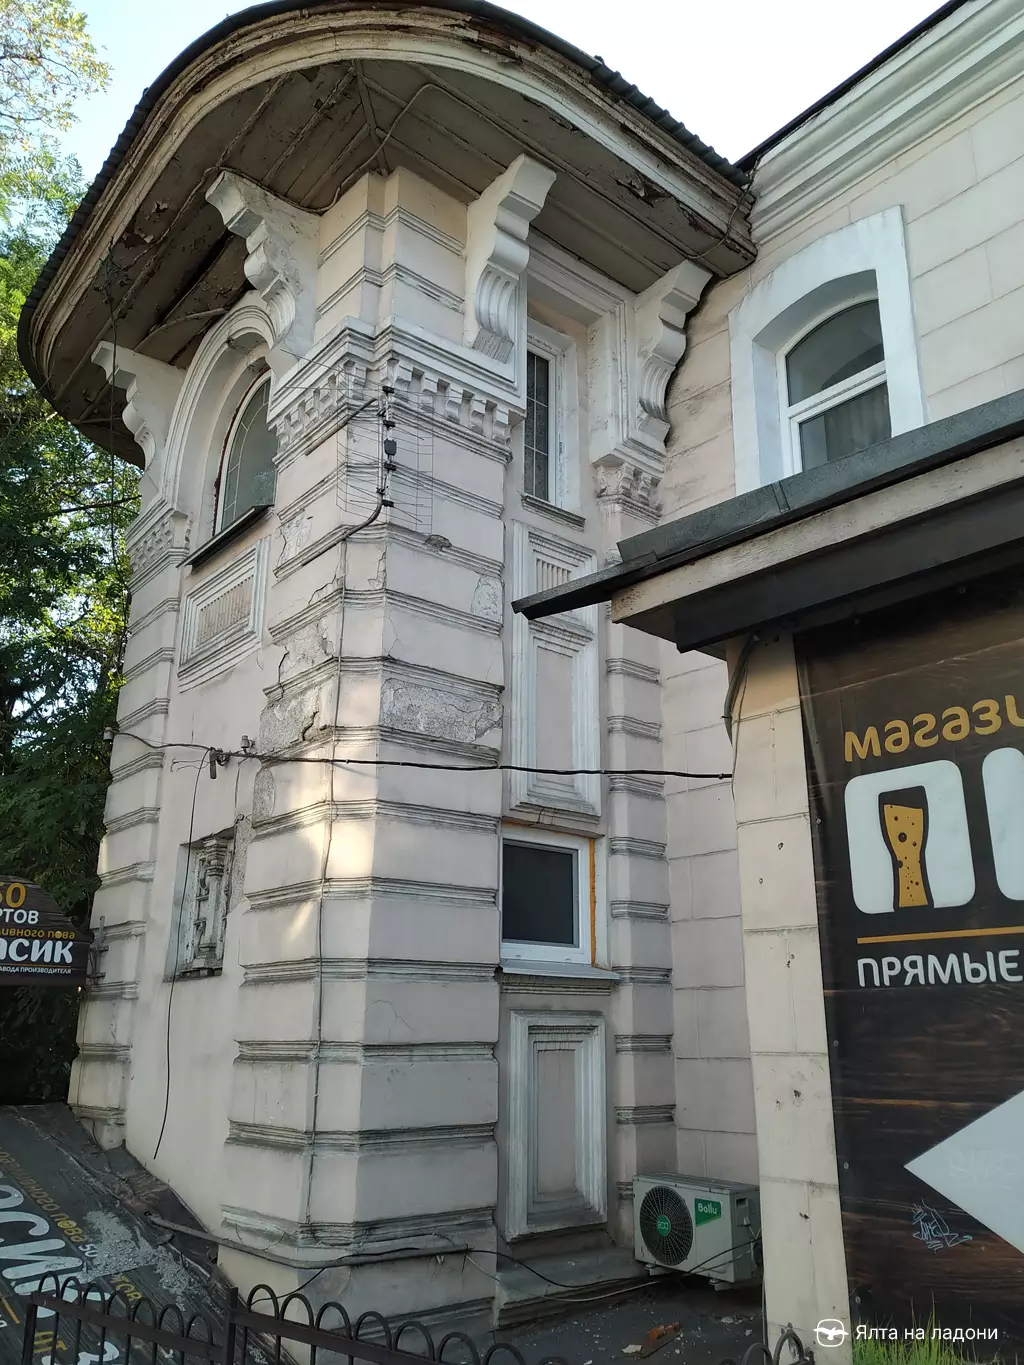 Доходный дом Крумана в Крыму